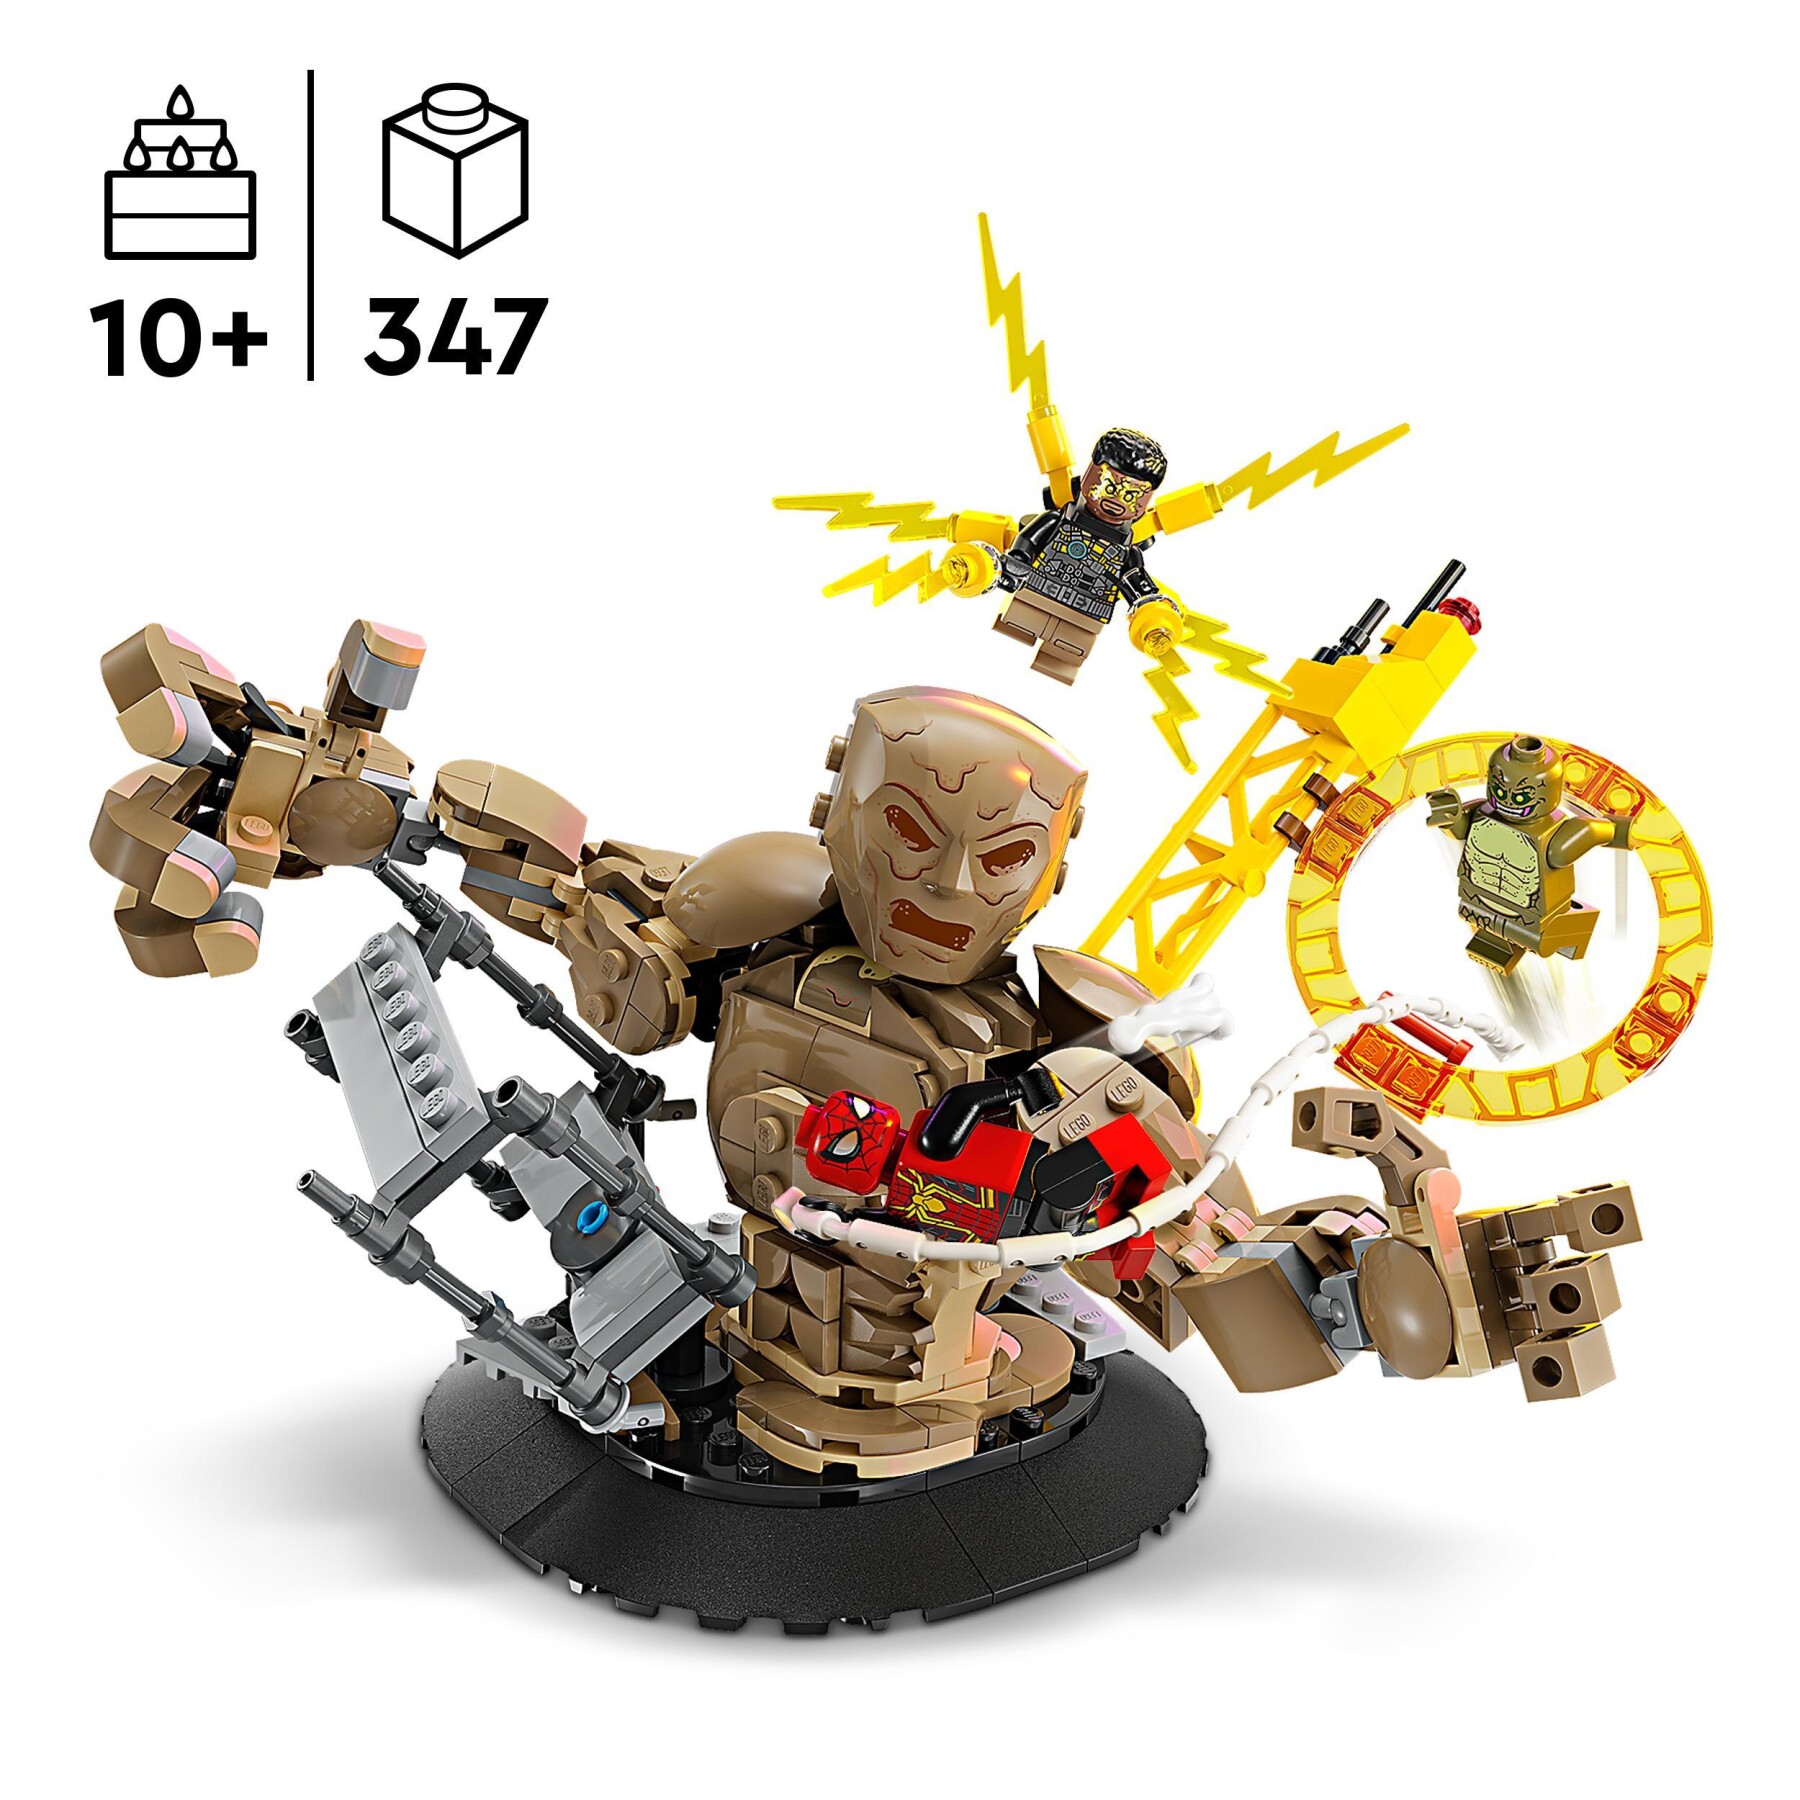 Lego marvel 76280 spider-man vs. uomo sabbia: battaglia finale con minifigure dei cattivi, gioco per bambini 10+, idea regalo - LEGO SUPER HEROES, Avengers, Spiderman